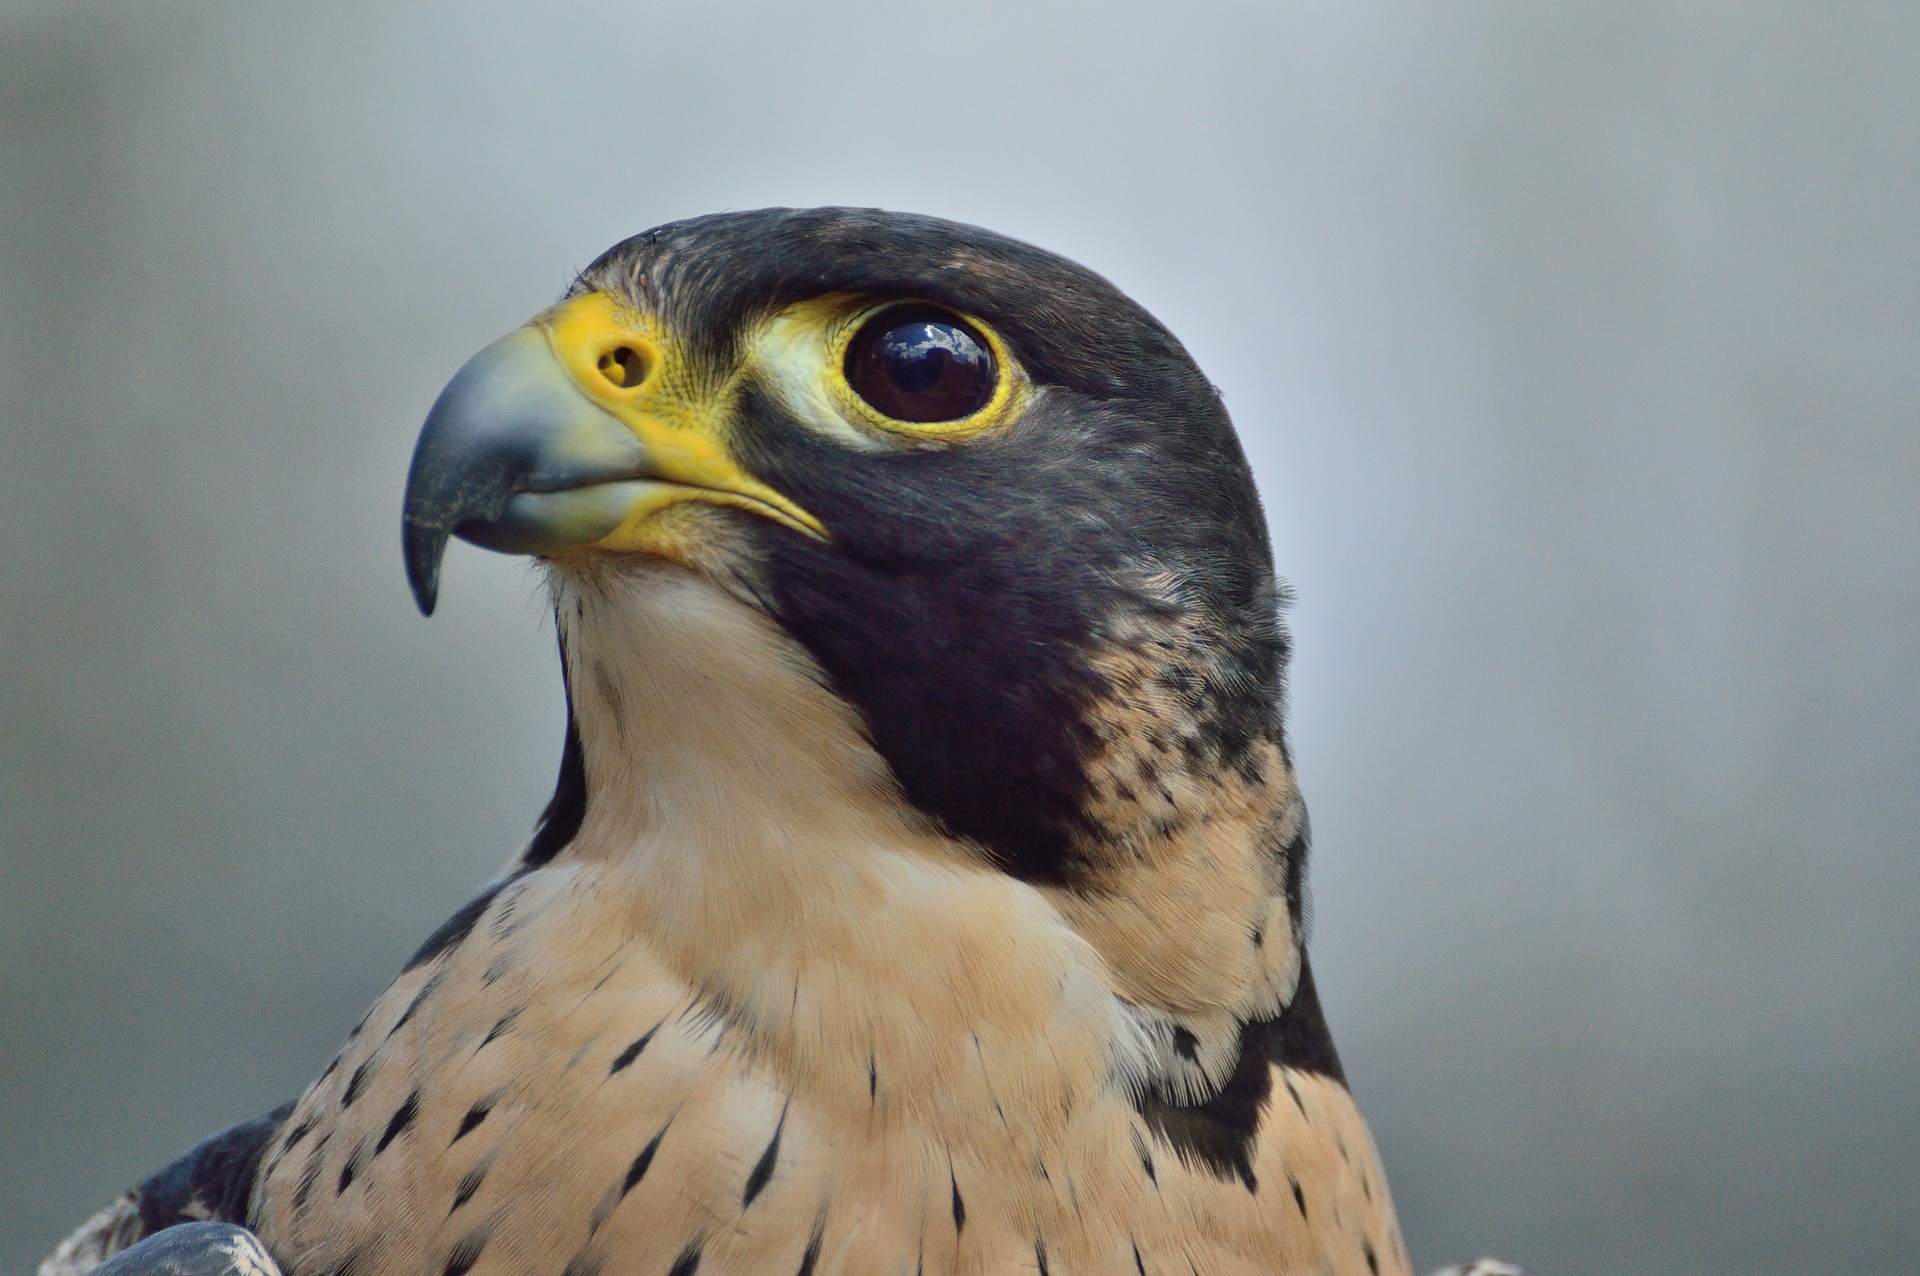 Peregrine falcon - raptors birds of prey